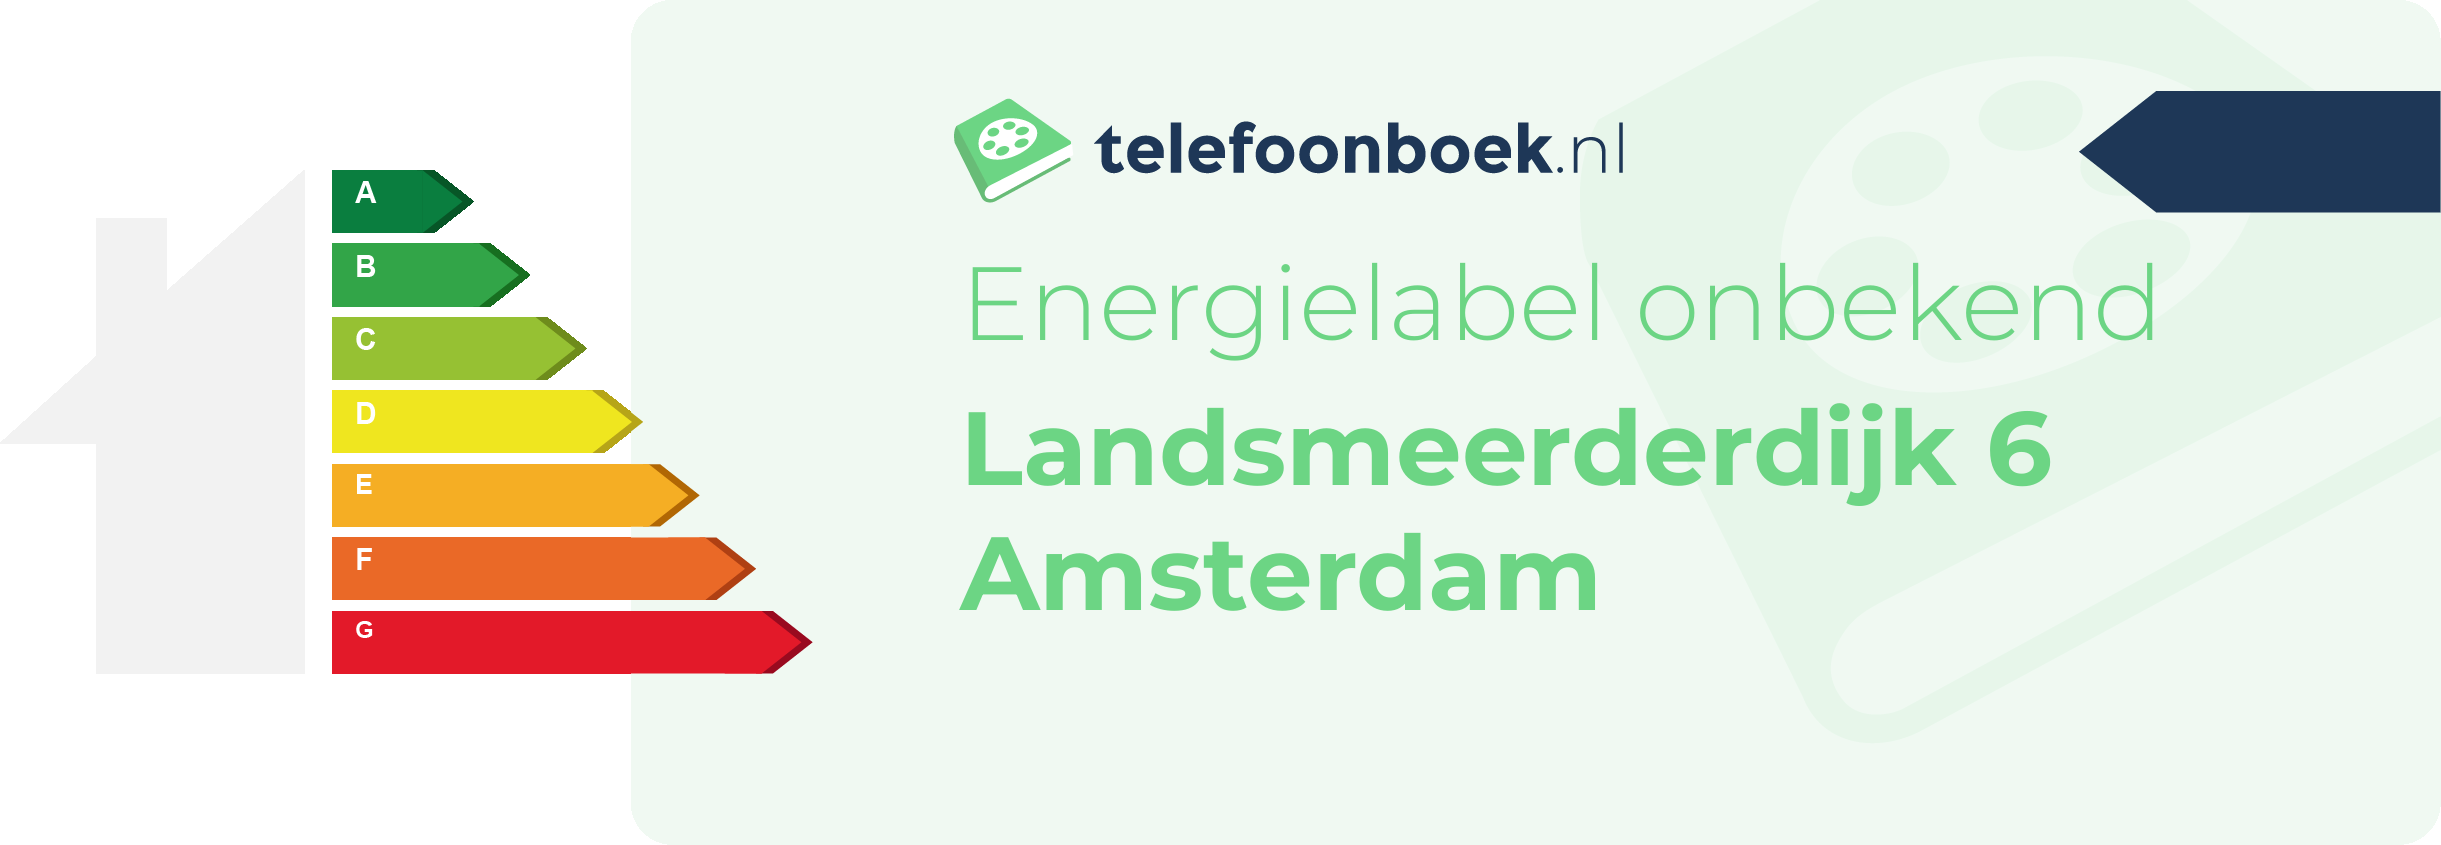 Energielabel Landsmeerderdijk 6 Amsterdam